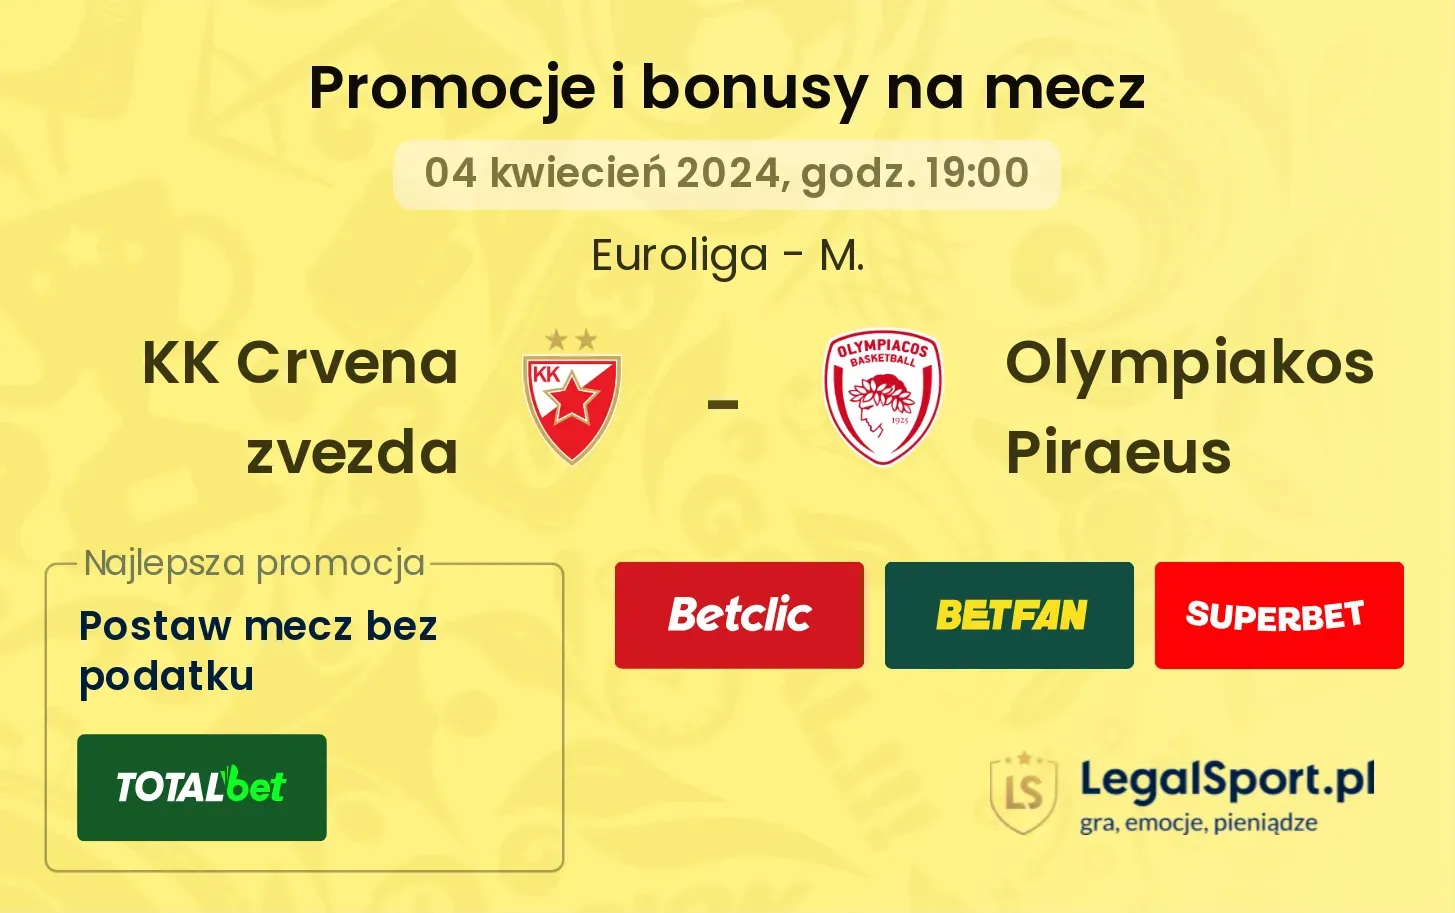 KK Crvena zvezda - Olympiakos Piraeus promocje bonusy na mecz